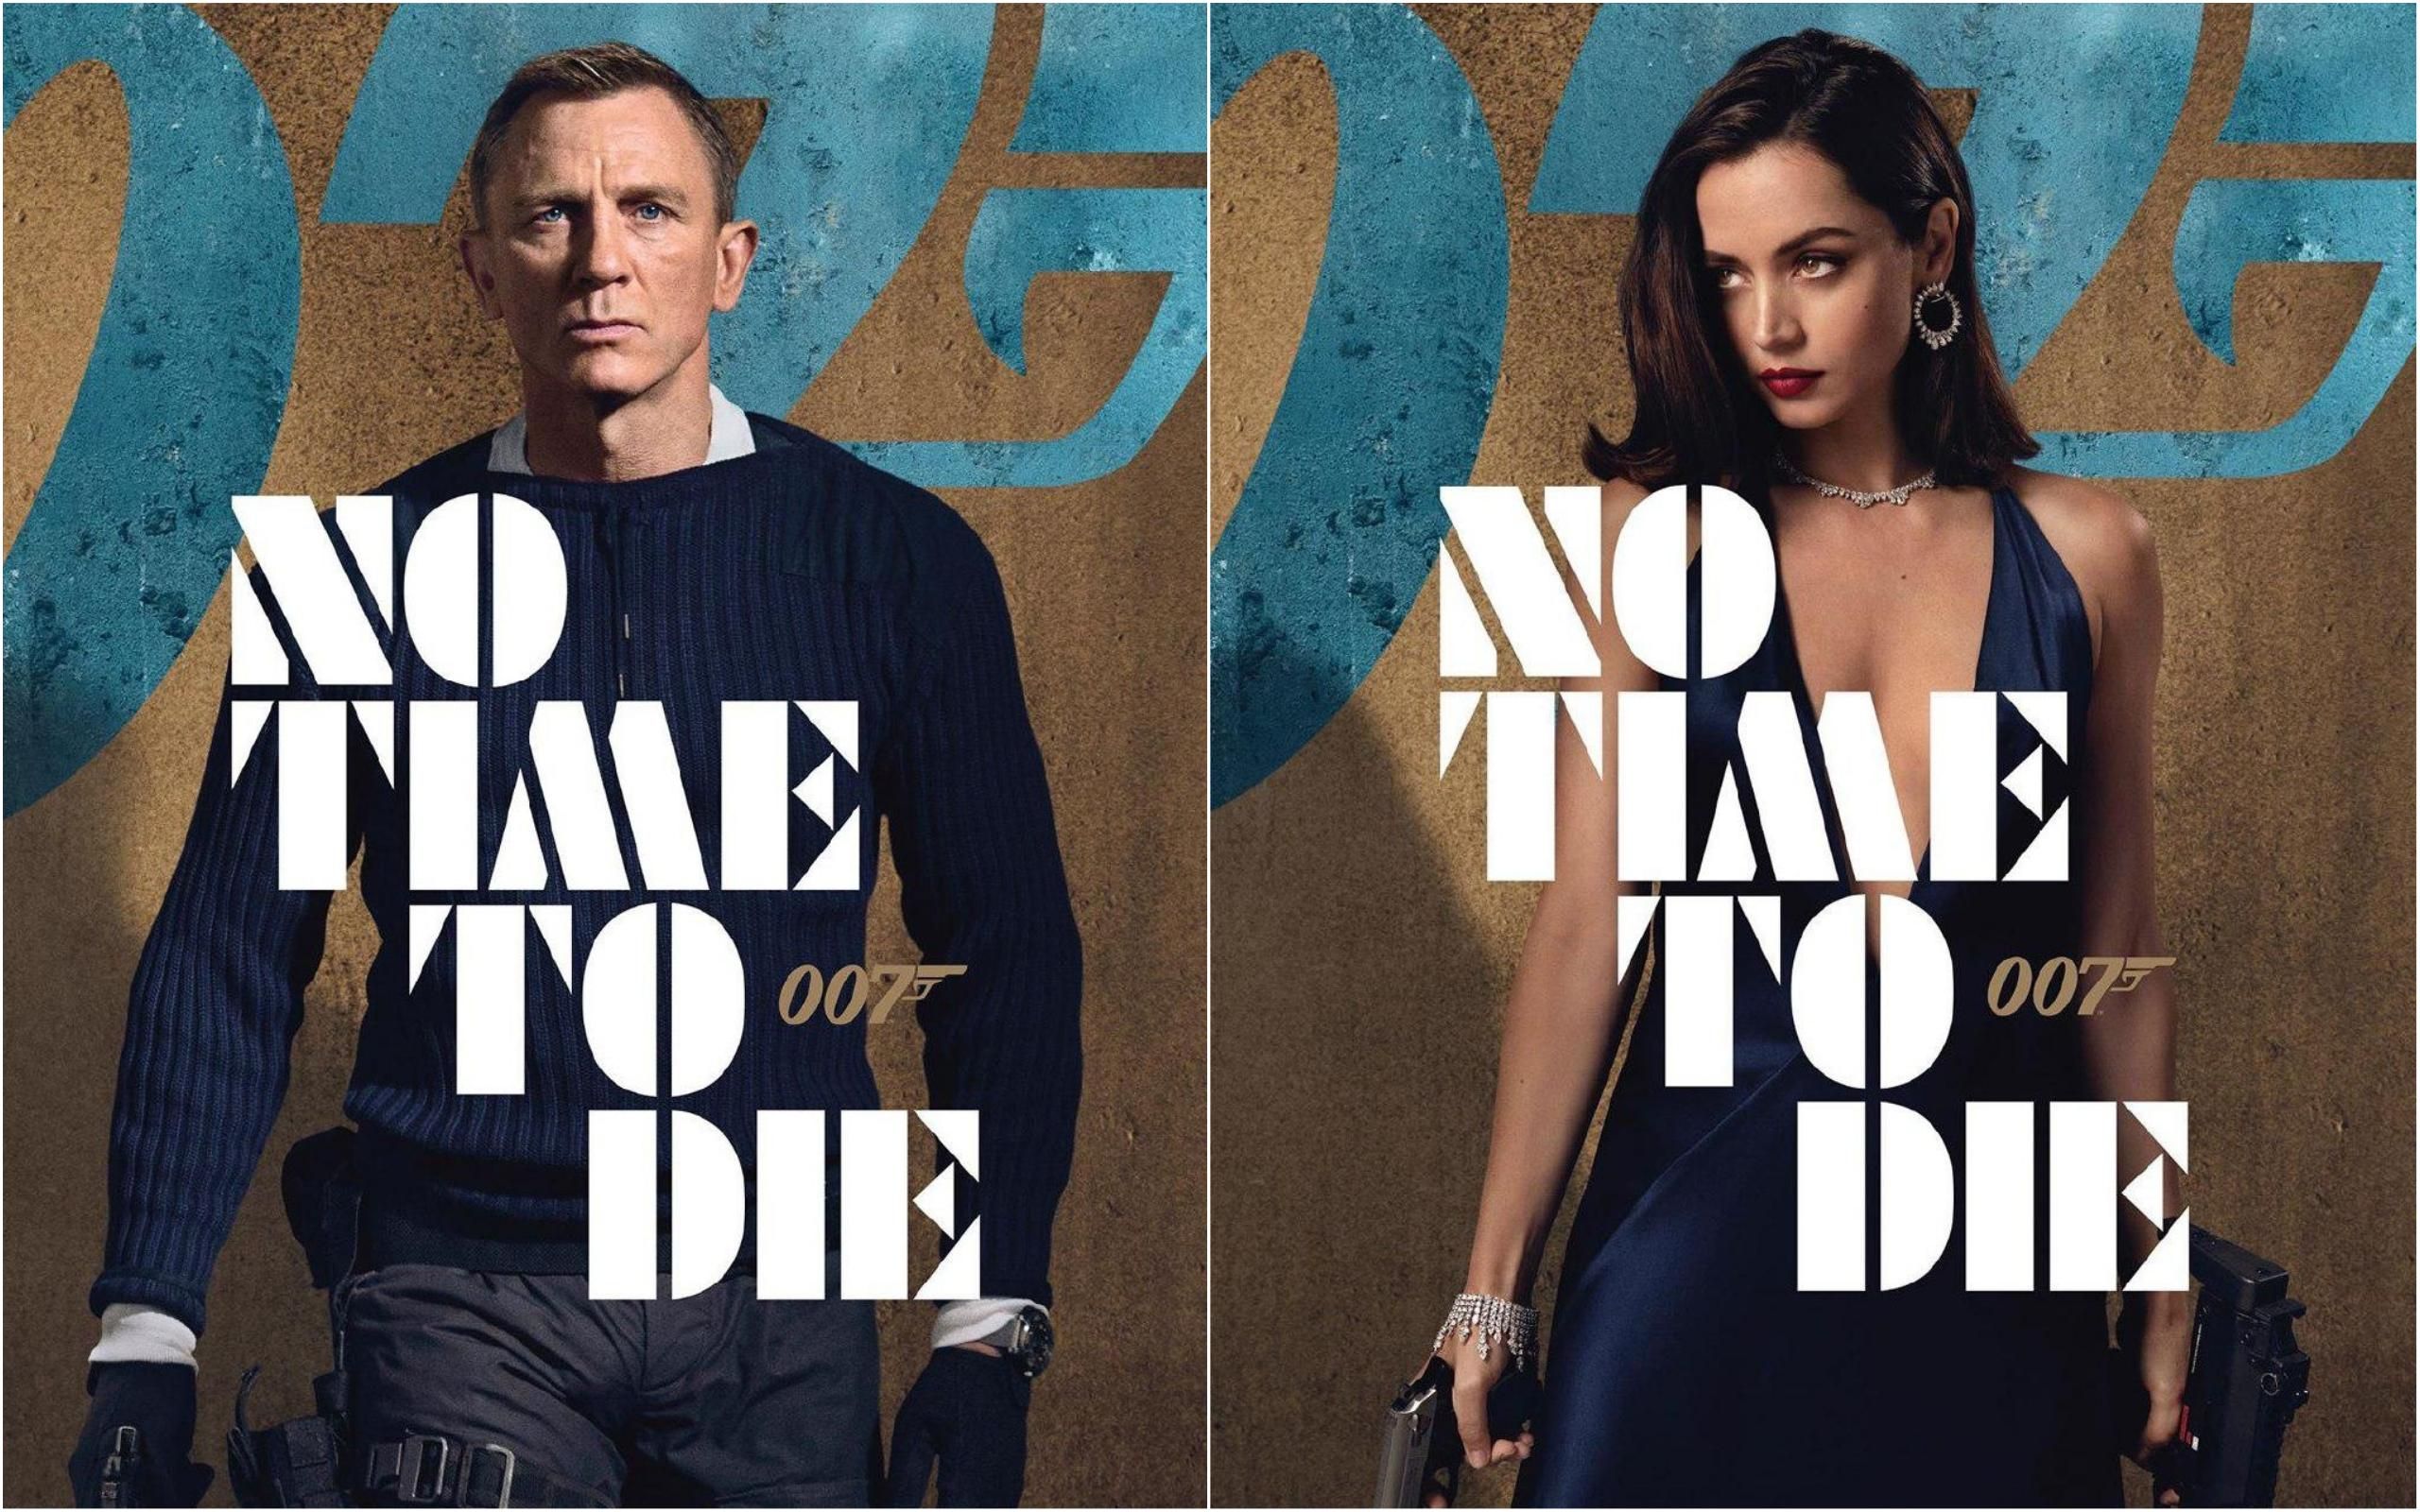 "007: Не время умирать": появились потрясающие персонажные постеры к фильму о Джеймсе Бонде